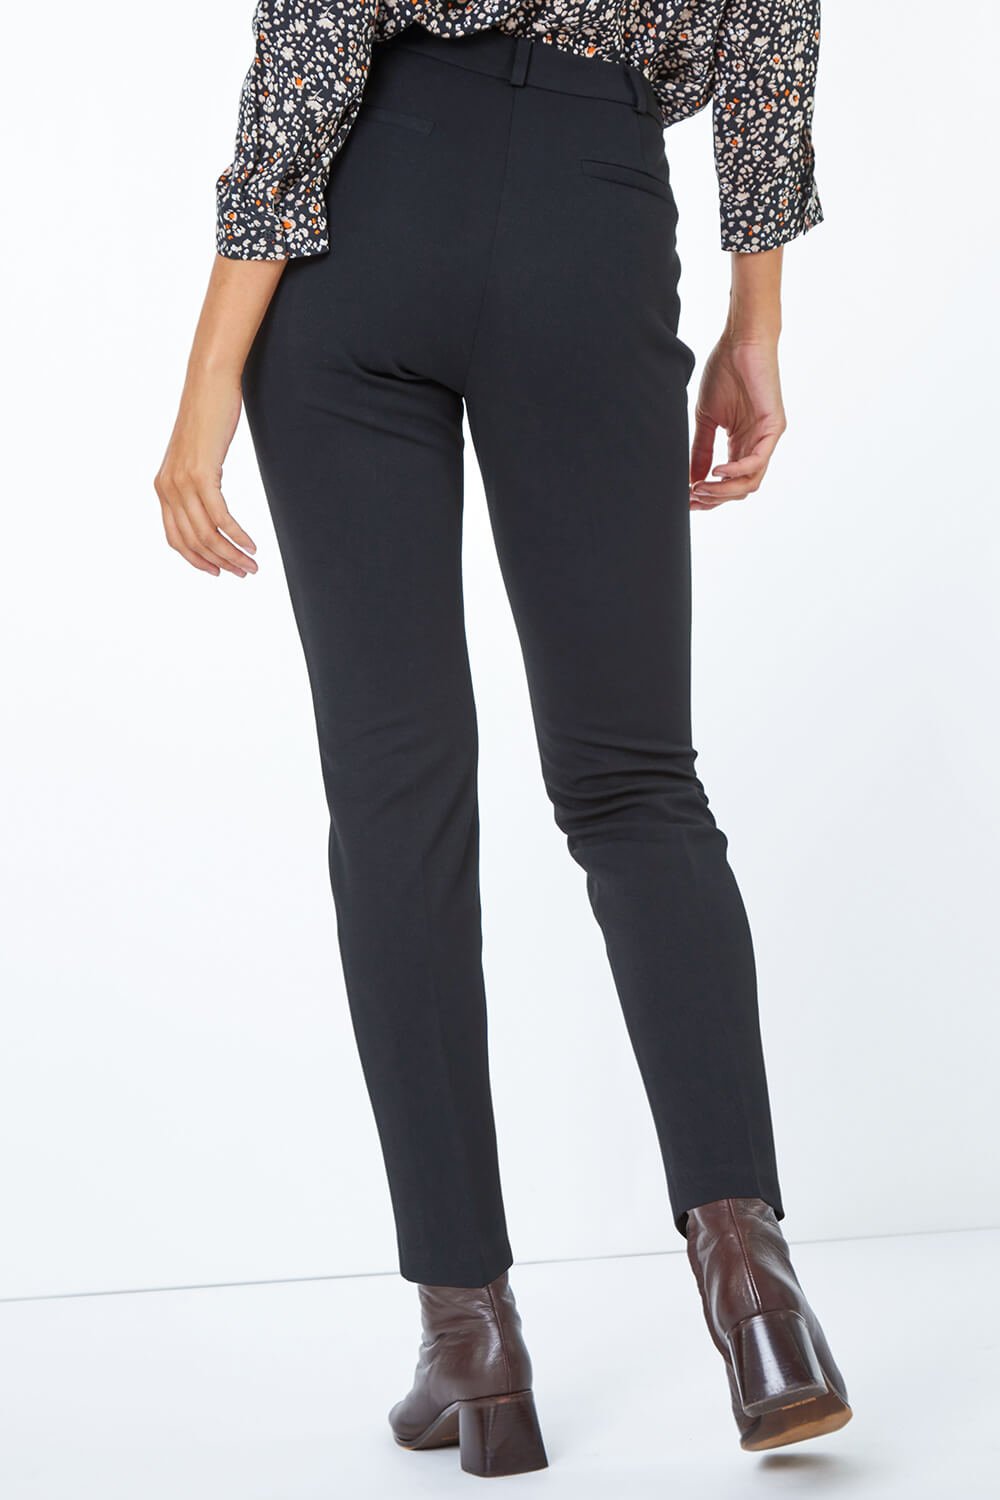 Black Tapered Leg Smart Trouser, Image 4 of 5